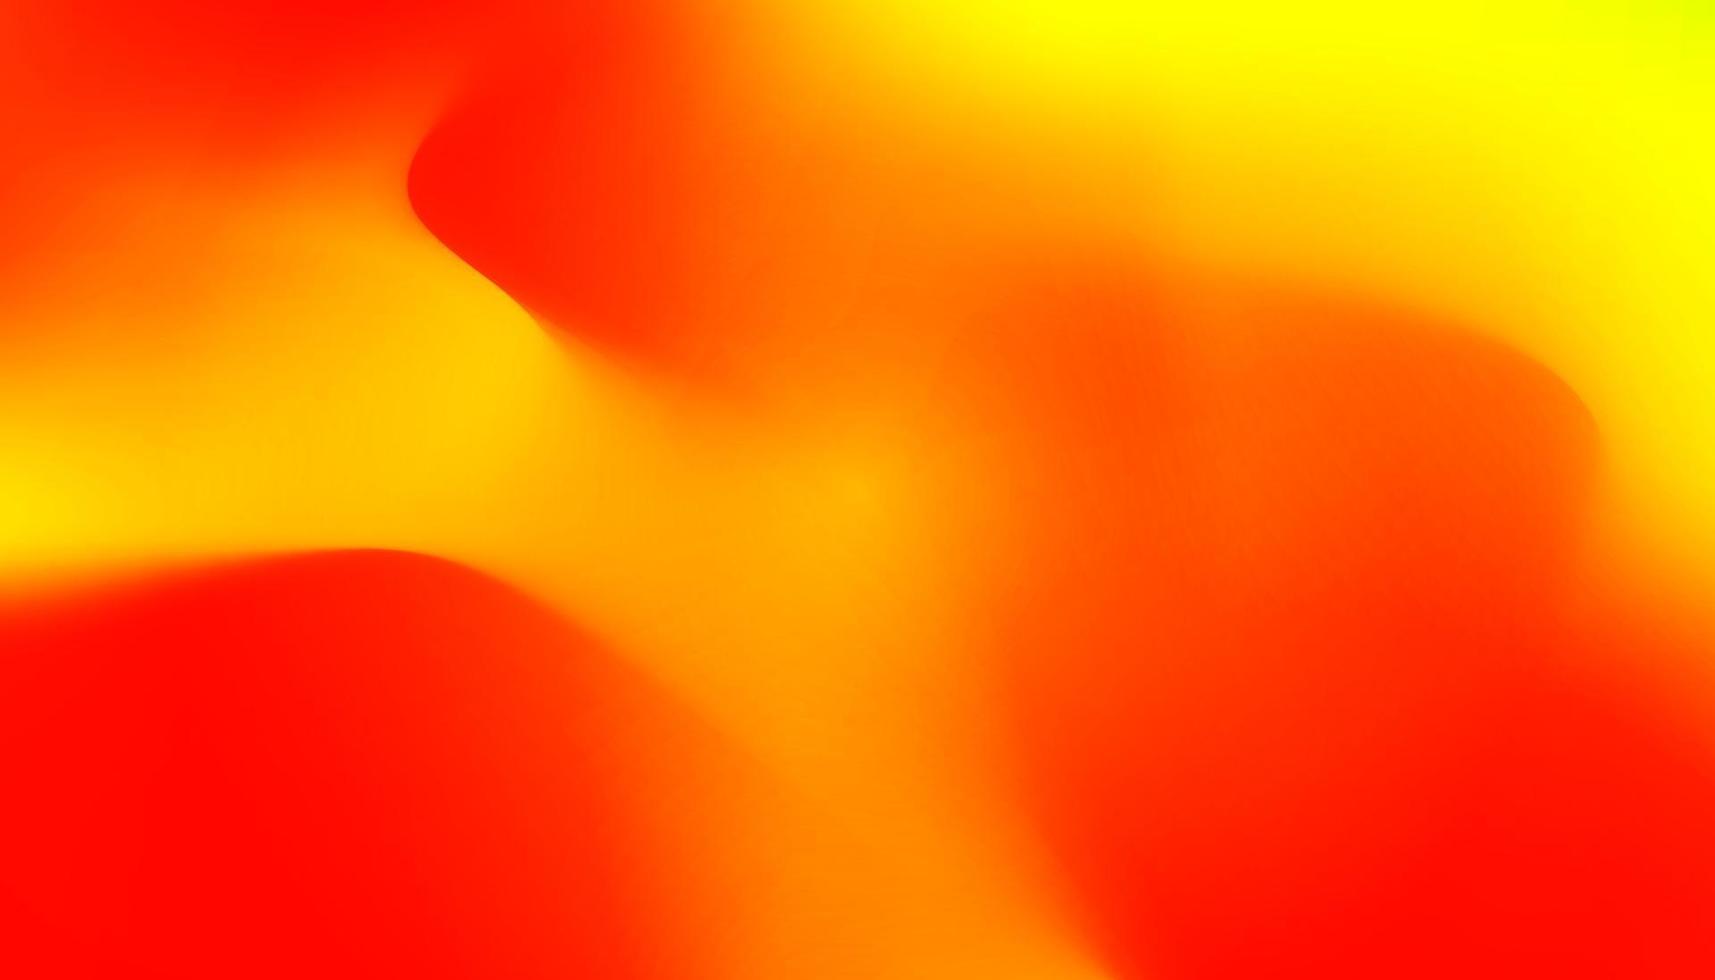 banner degradado ondulado naranja jugoso. Fondo abstracto líquido dinámico  de colores cálidos y frescos. Fondos de